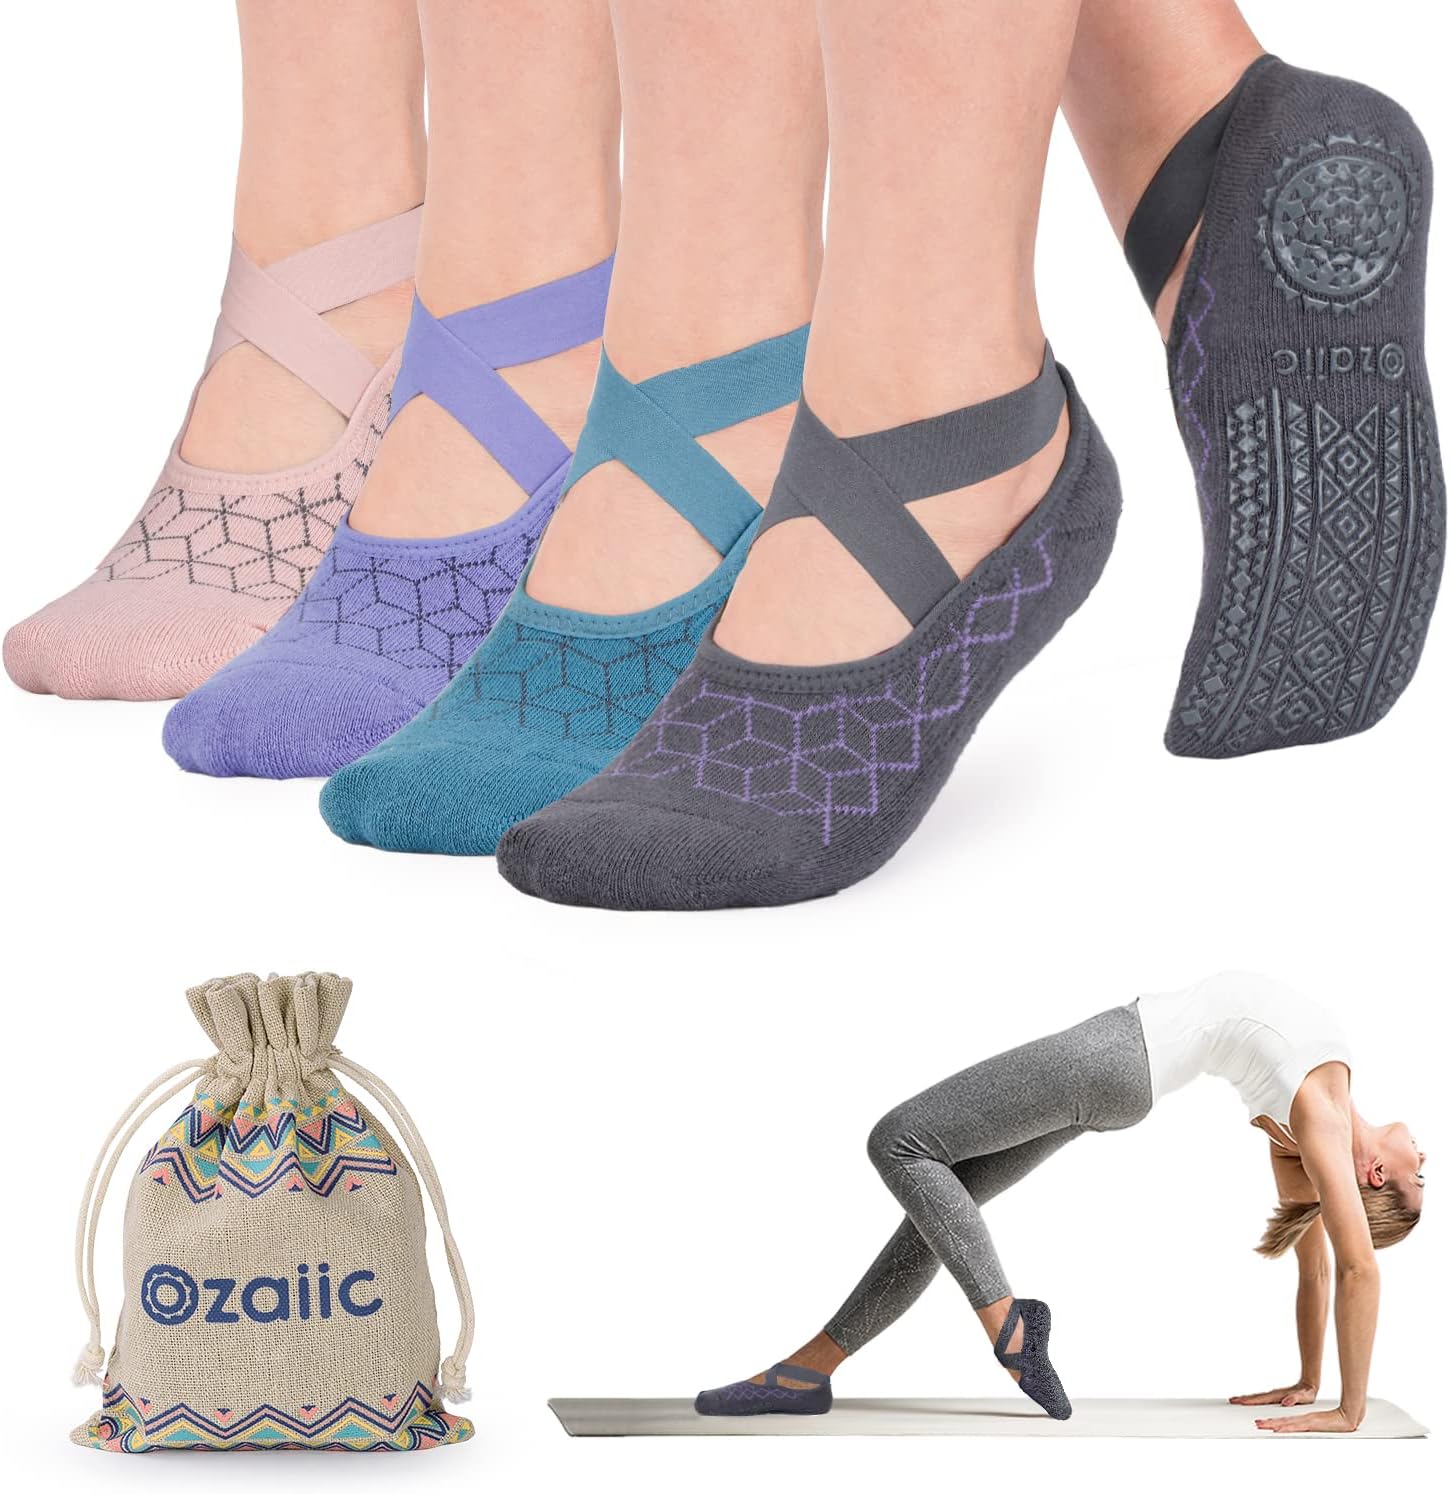 Yoga Socks for Women Non-Slip Grips & Straps, Ideal for Pilates